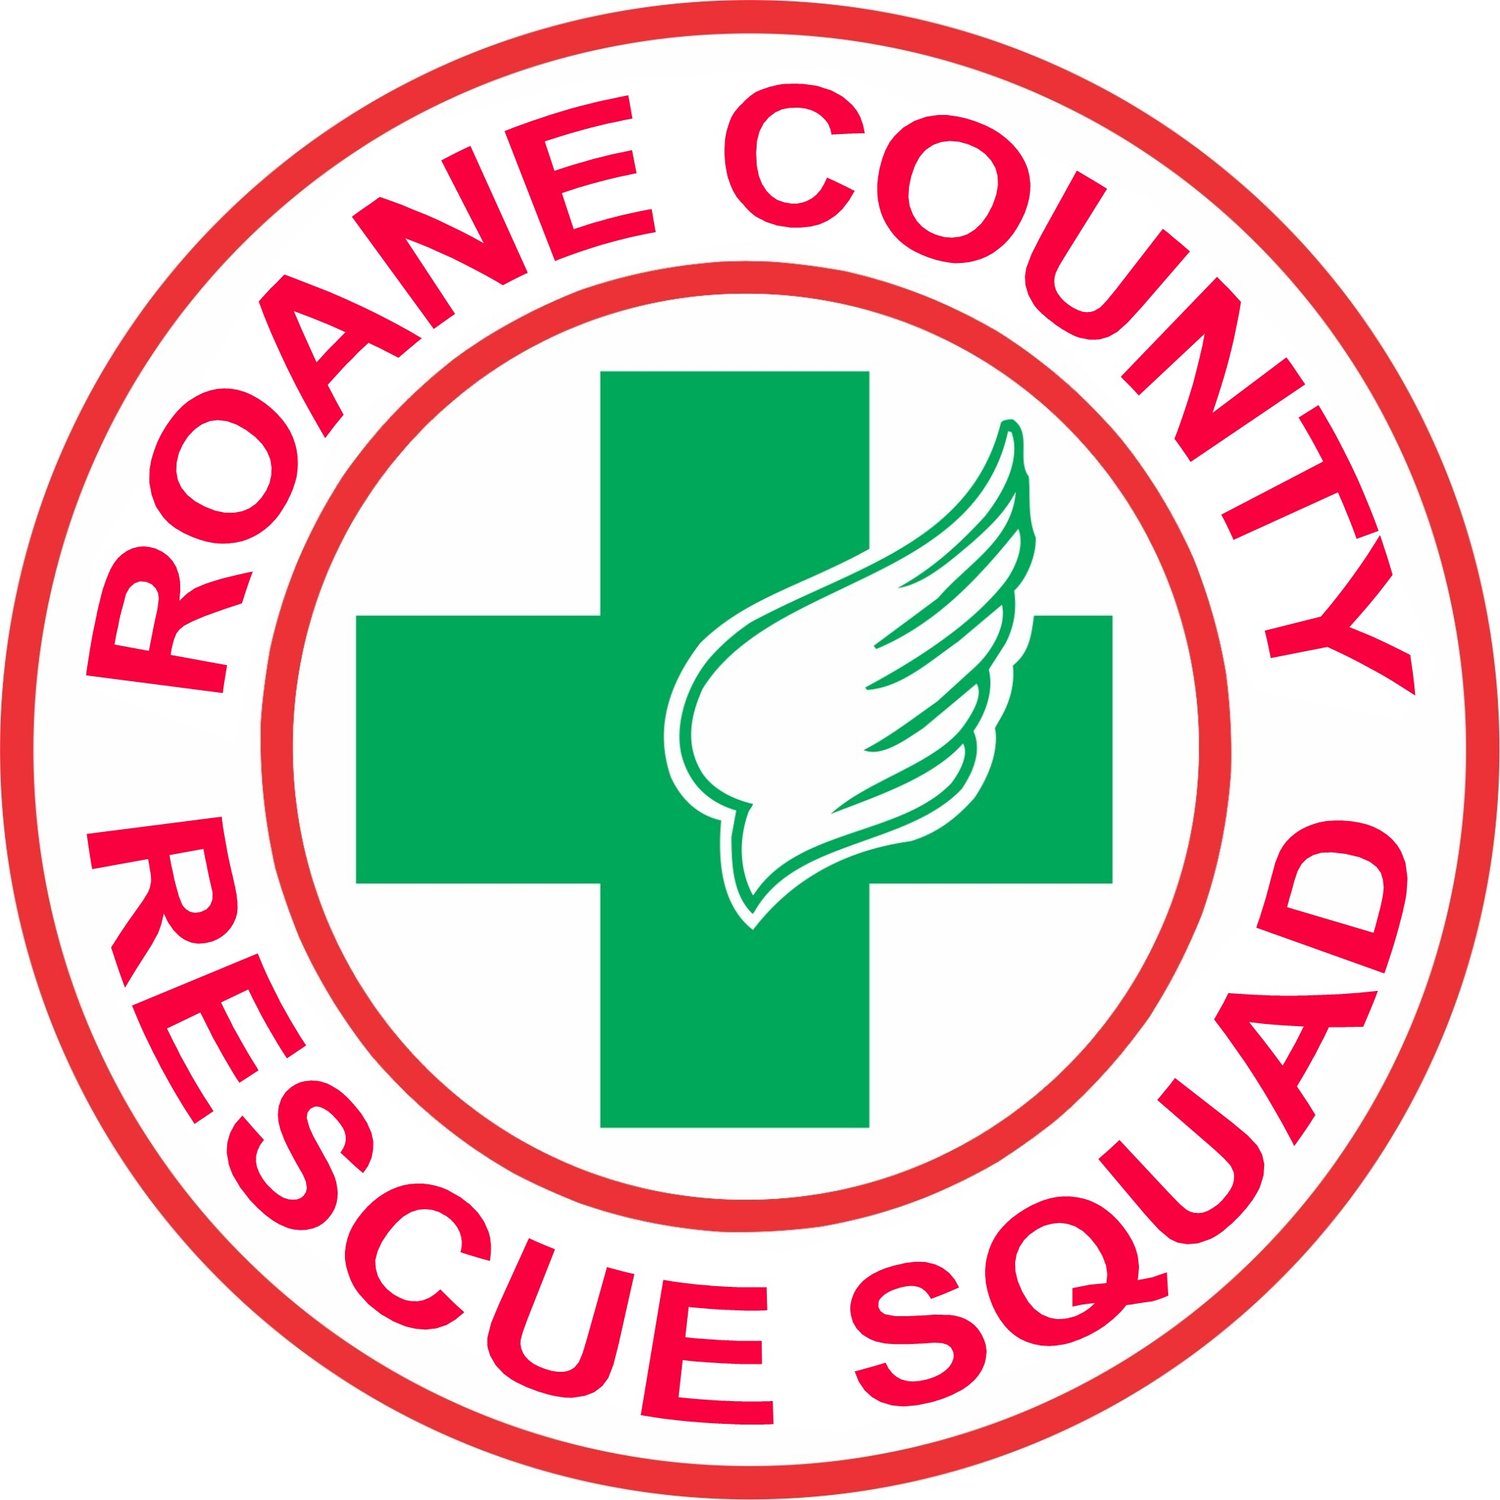 Roane County Rescue Squad